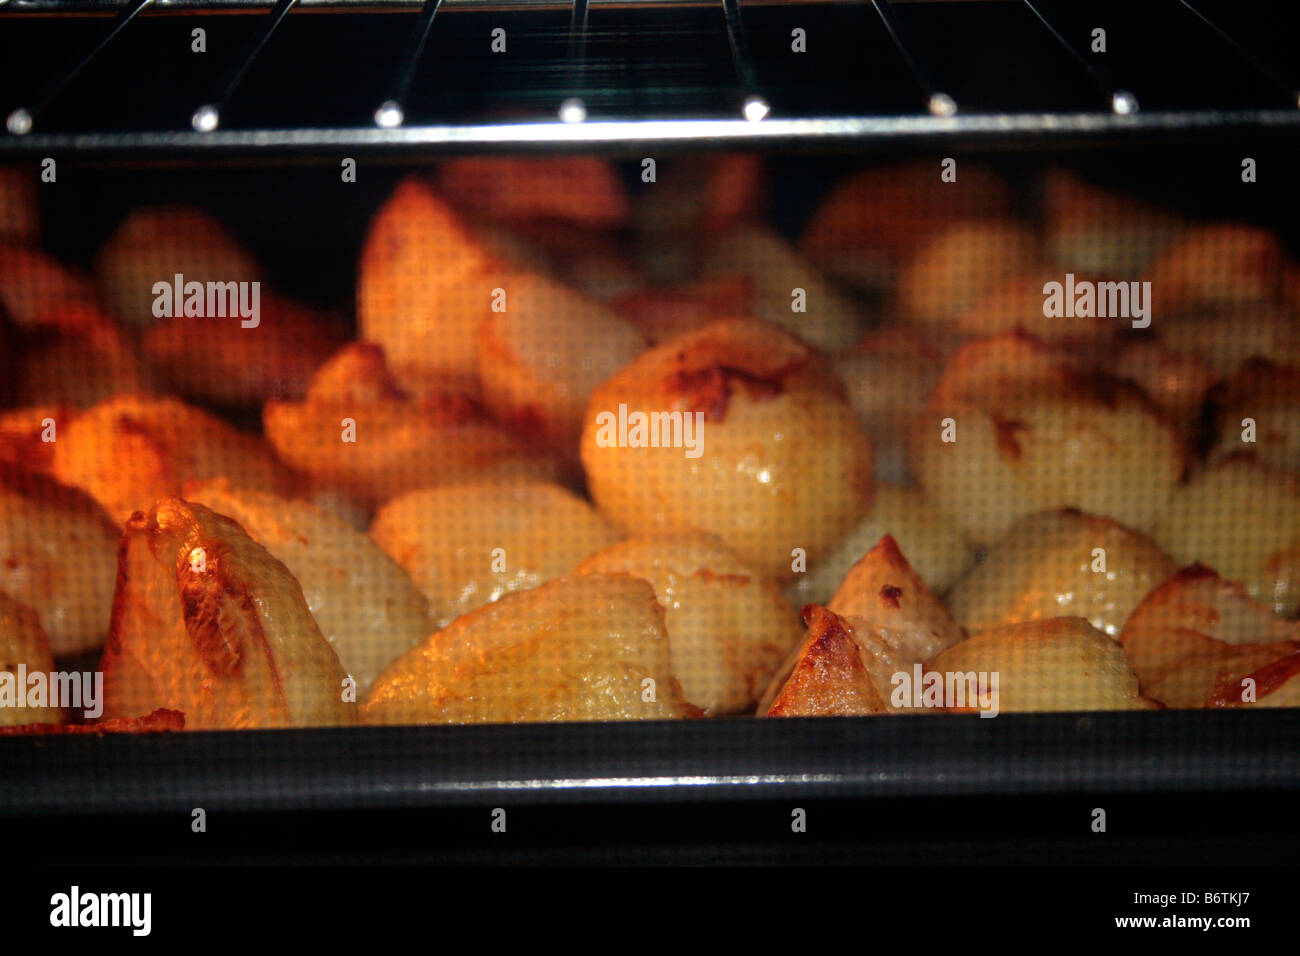 Englisch gebratene Kartoffeln im Ofen Stockfotografie - Alamy